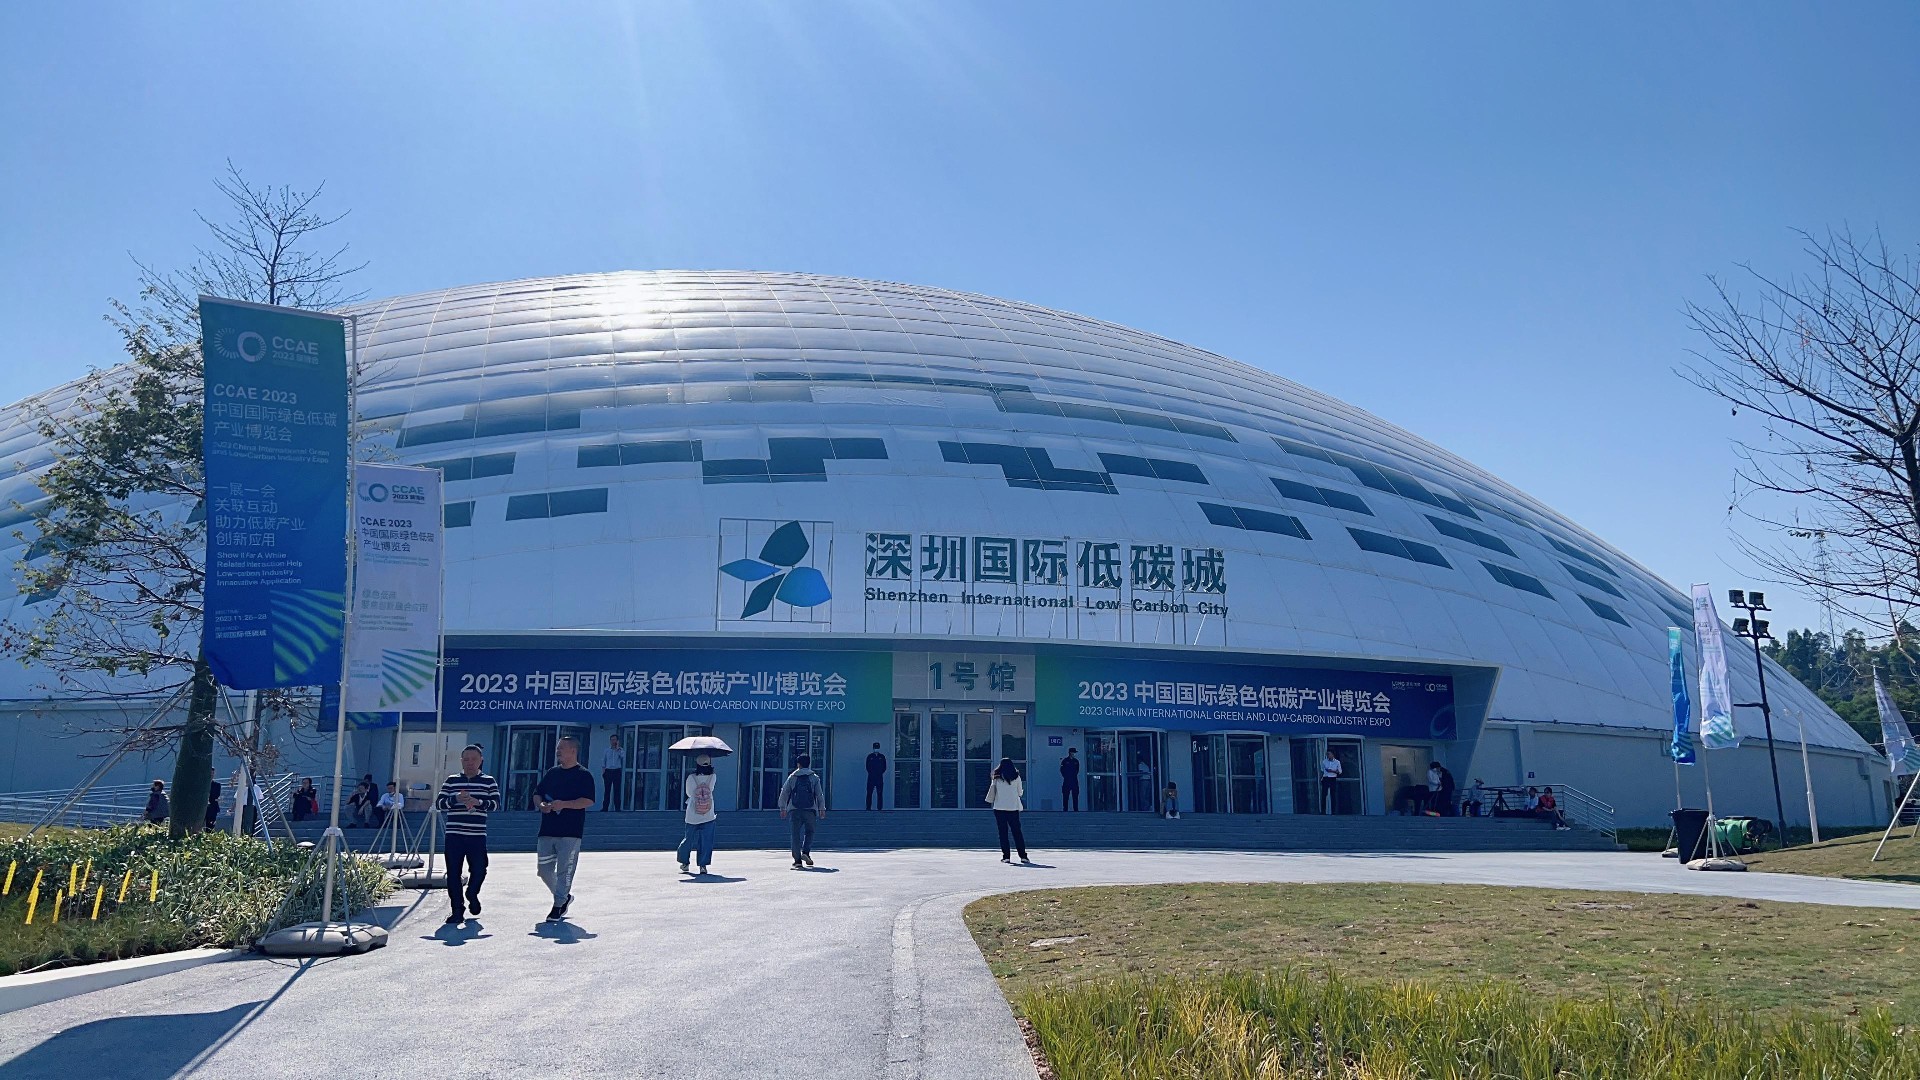 球盟会设计并承建的深圳国际低碳城1号馆